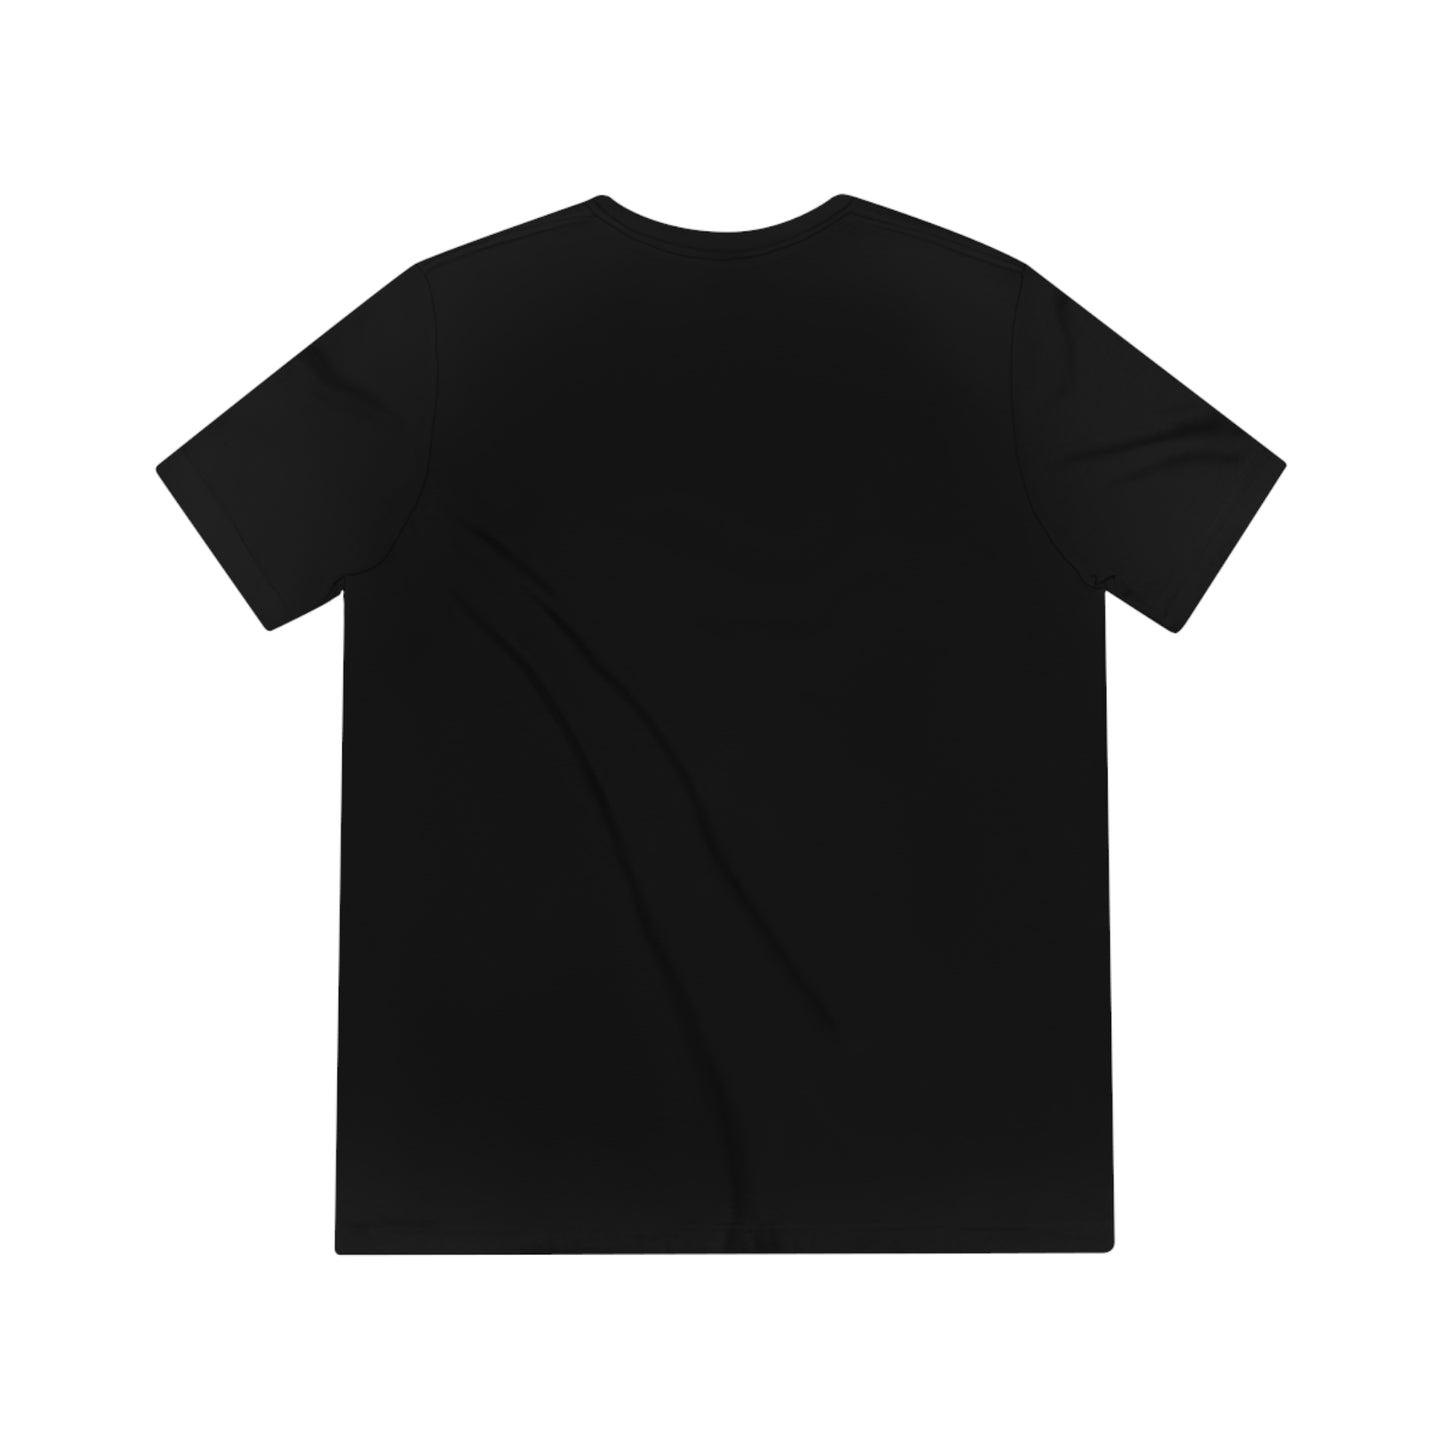 "ye" - Kanye West Unisex T-Shirt 2